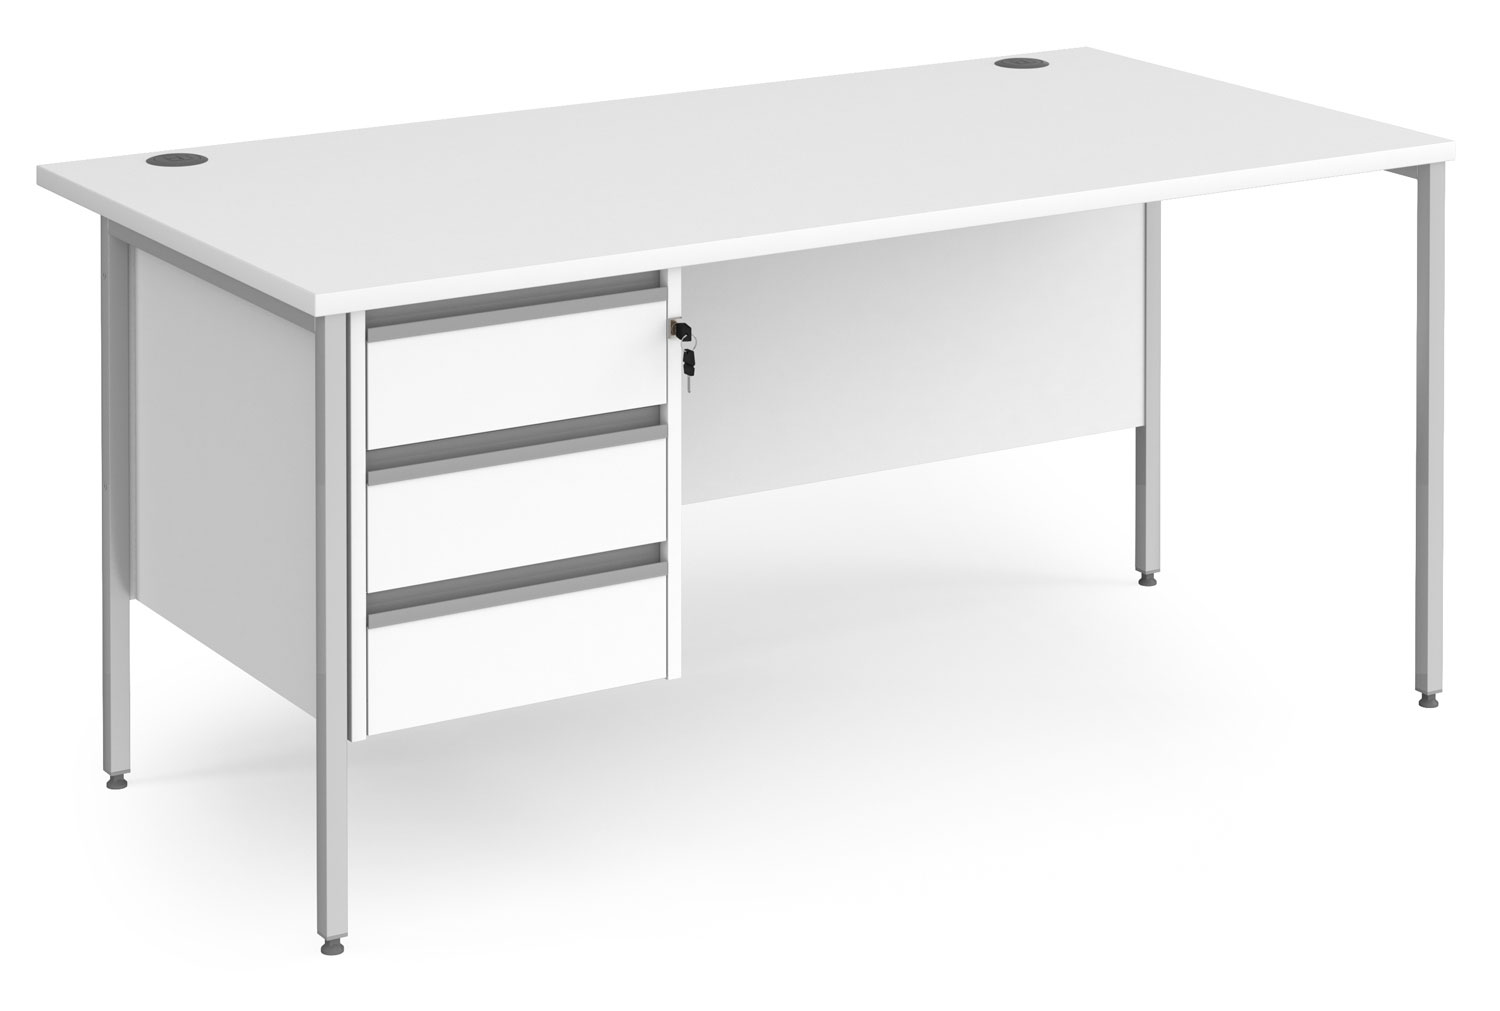 Value Line Classic+ Rectangular H-Leg Office Desk 3 Drawers (Silver Leg), 160wx80dx73h (cm), White, Fully Installed